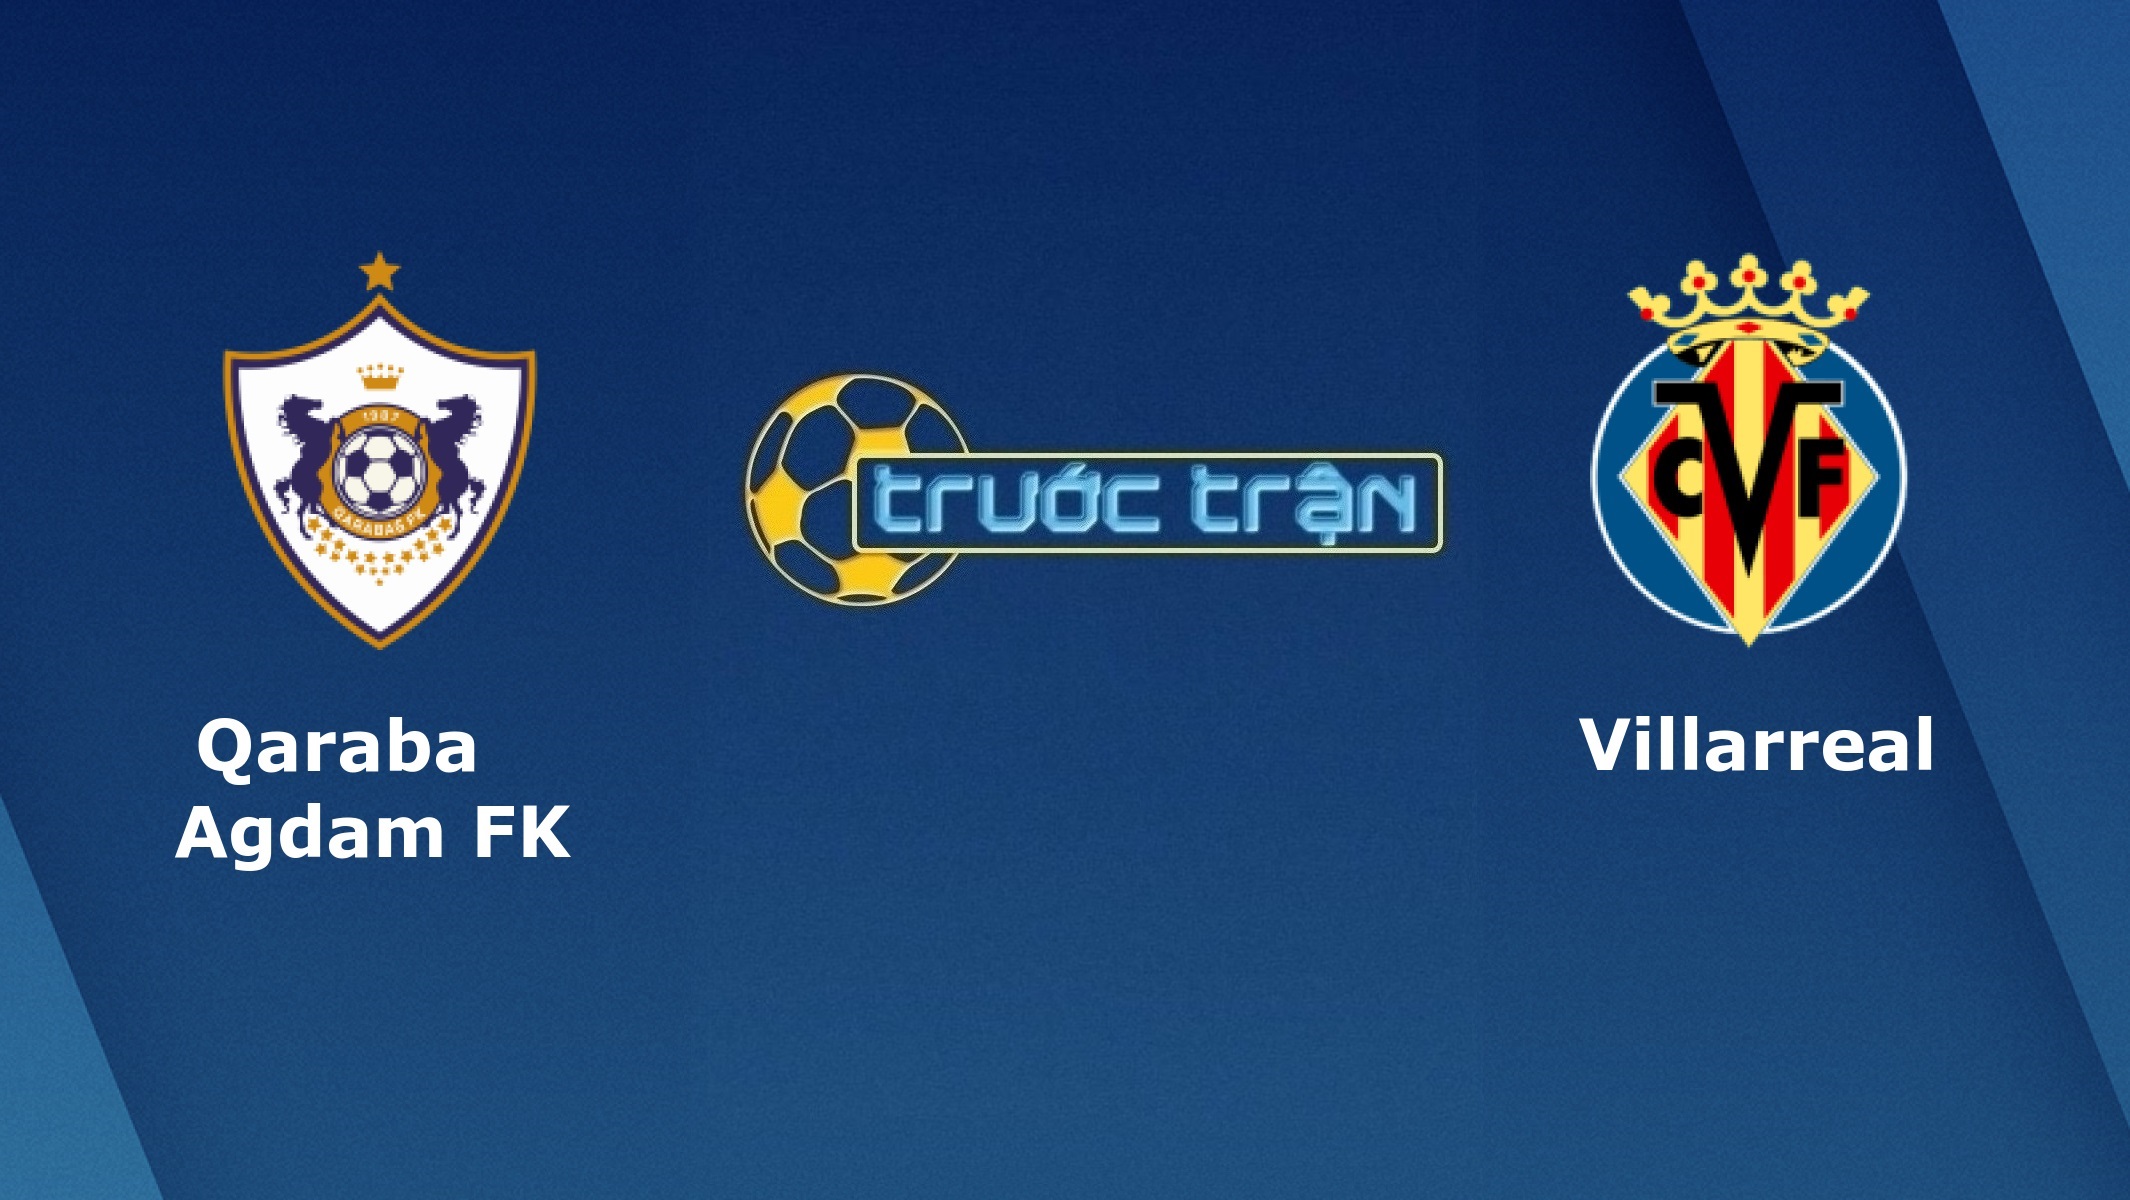 FK Qarabag vs Villarreal – Tip kèo bóng đá hôm nay – 00h55 30/10/2020